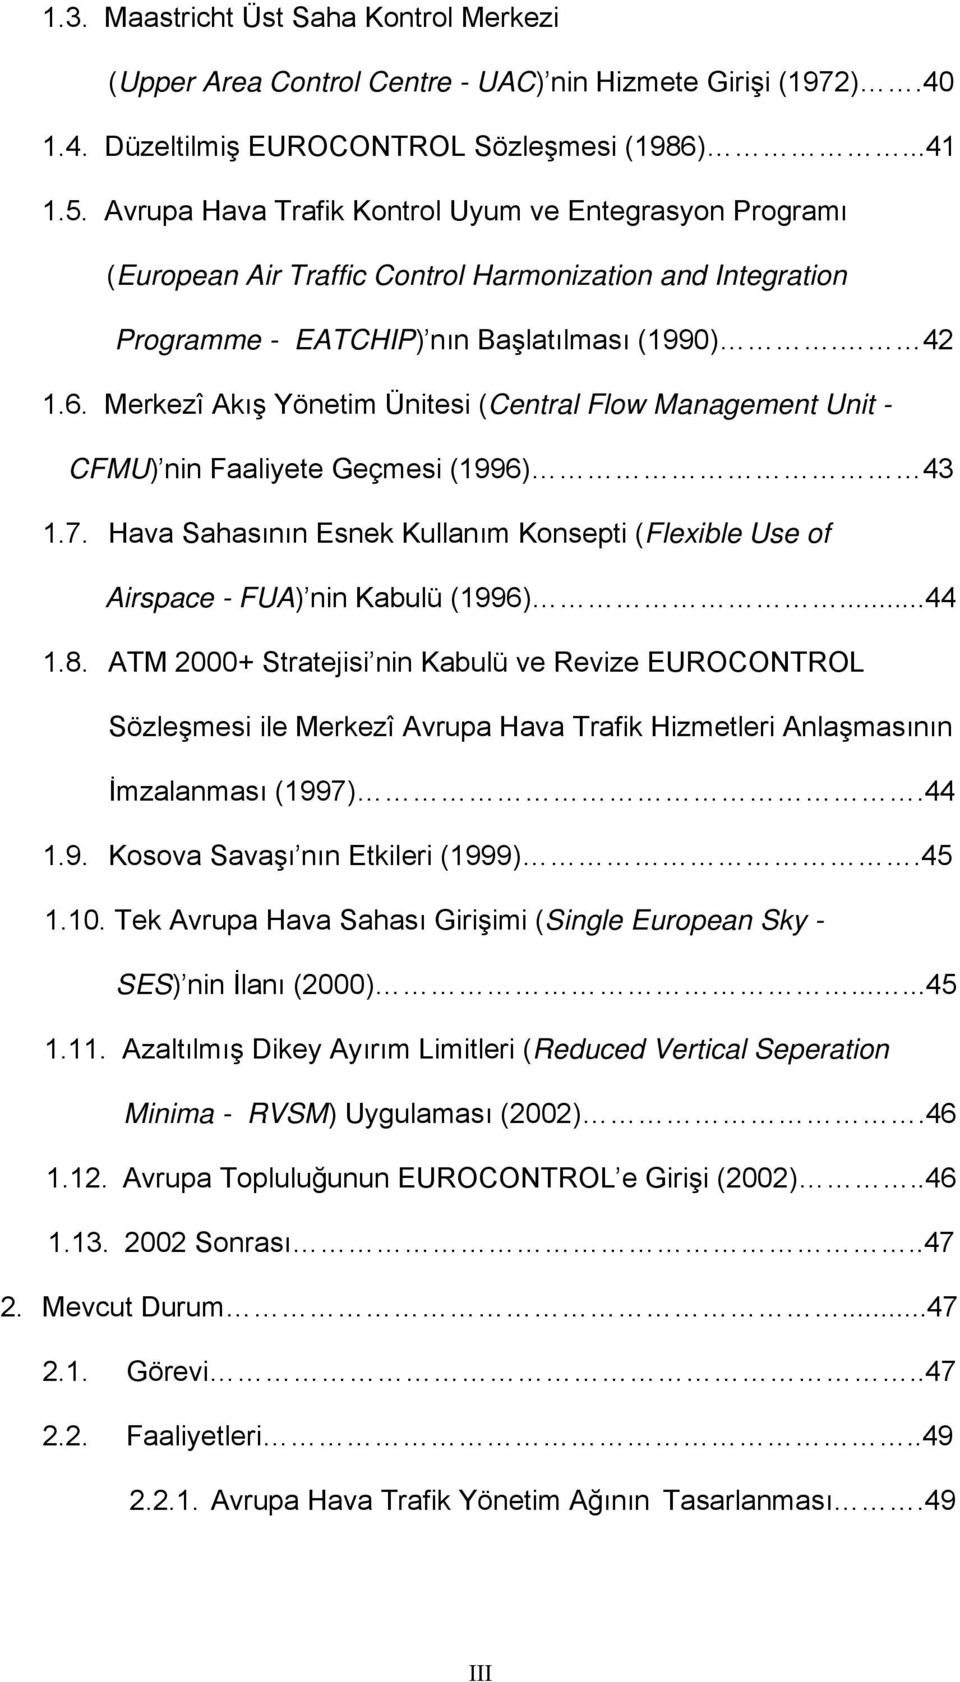 Merkezî Akış Yönetim Ünitesi (Central Flow Management Unit - CFMU) nin Faaliyete Geçmesi (1996) 43 1.7. Hava Sahasının Esnek Kullanım Konsepti (Flexible Use of Airspace - FUA) nin Kabulü (1996)...44 1.